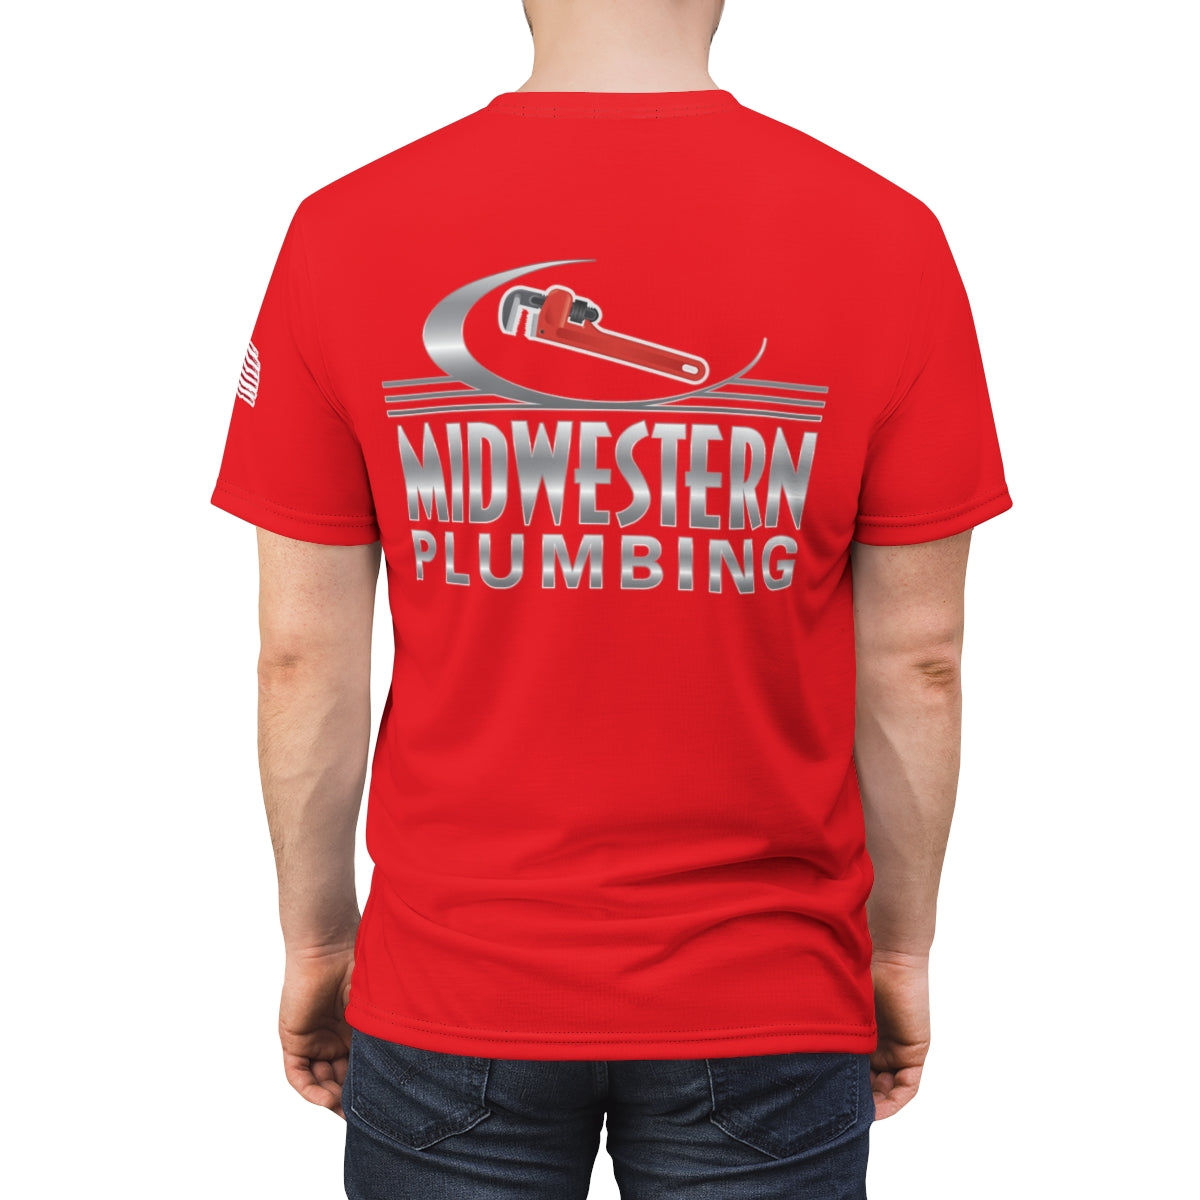 Midwestern Plumbing Red Premium Work Shirt